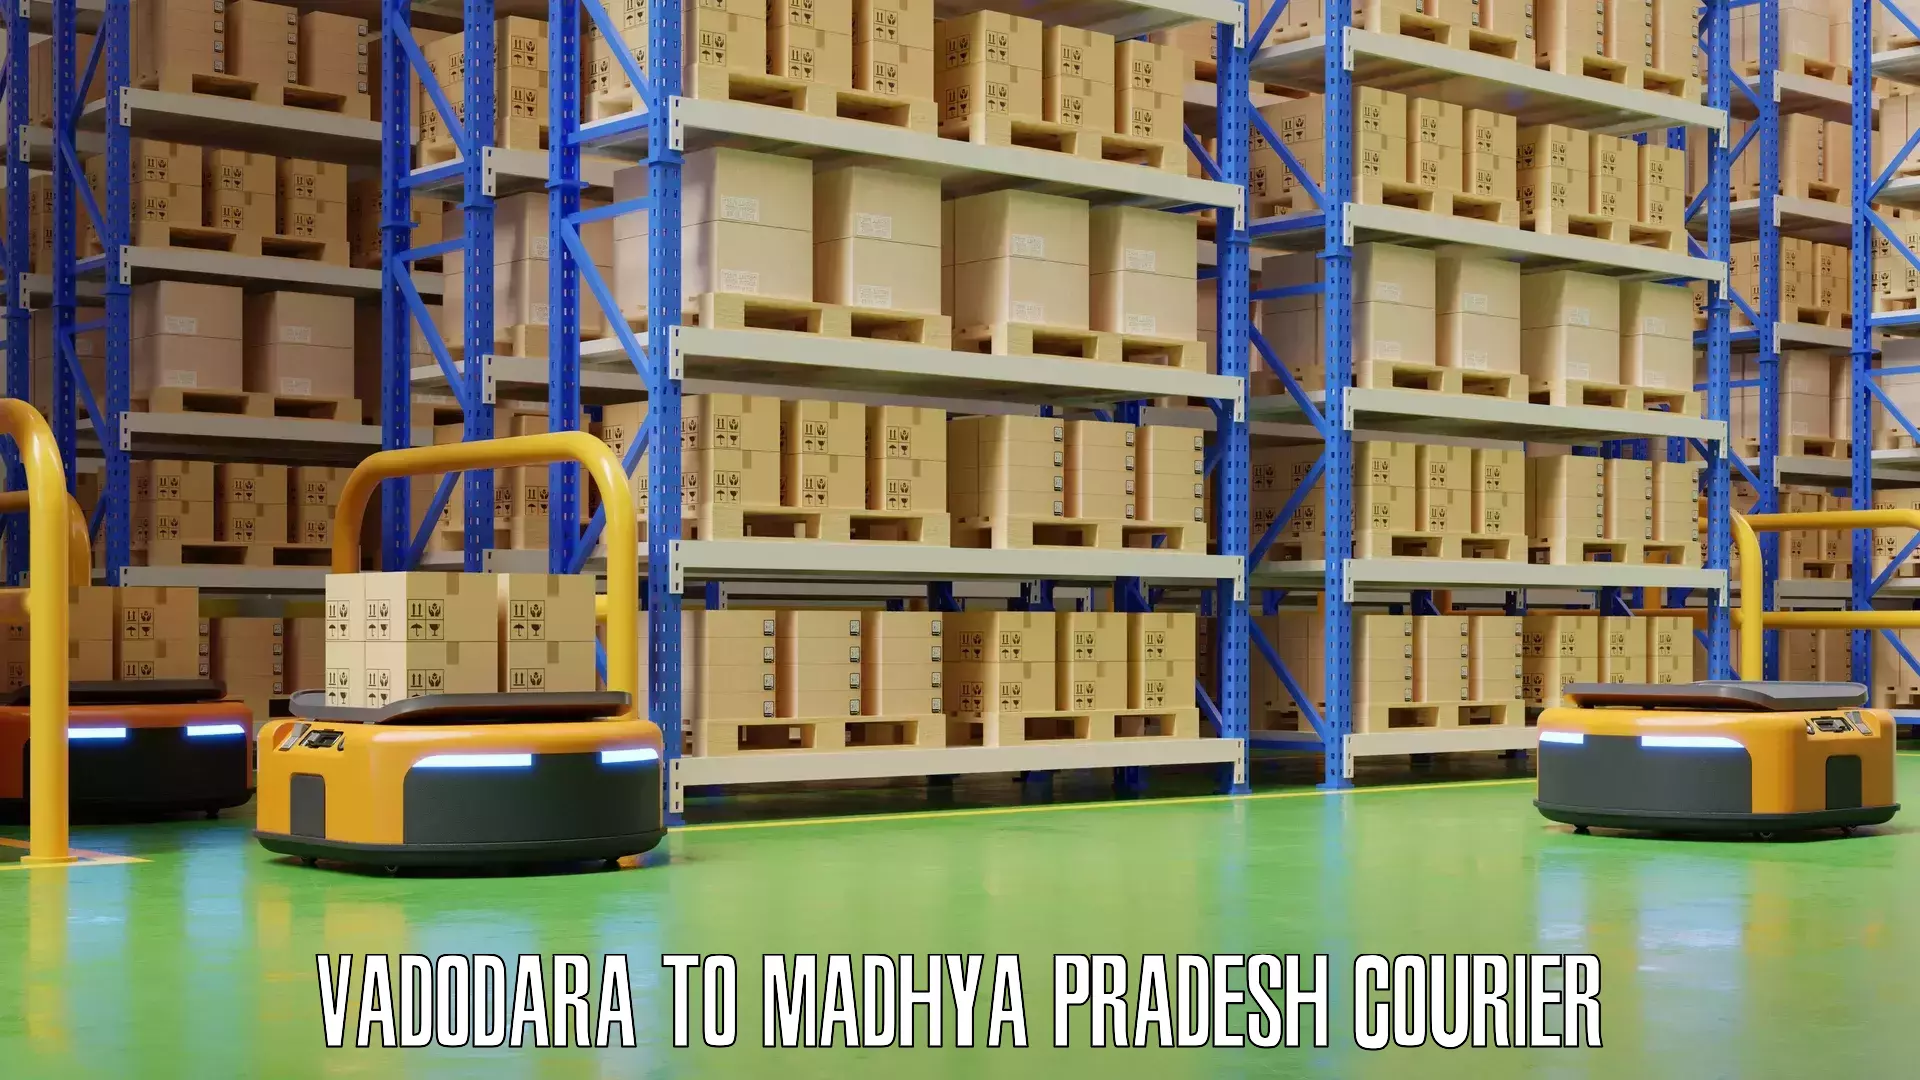 Baggage shipping schedule in Vadodara to Madhya Pradesh